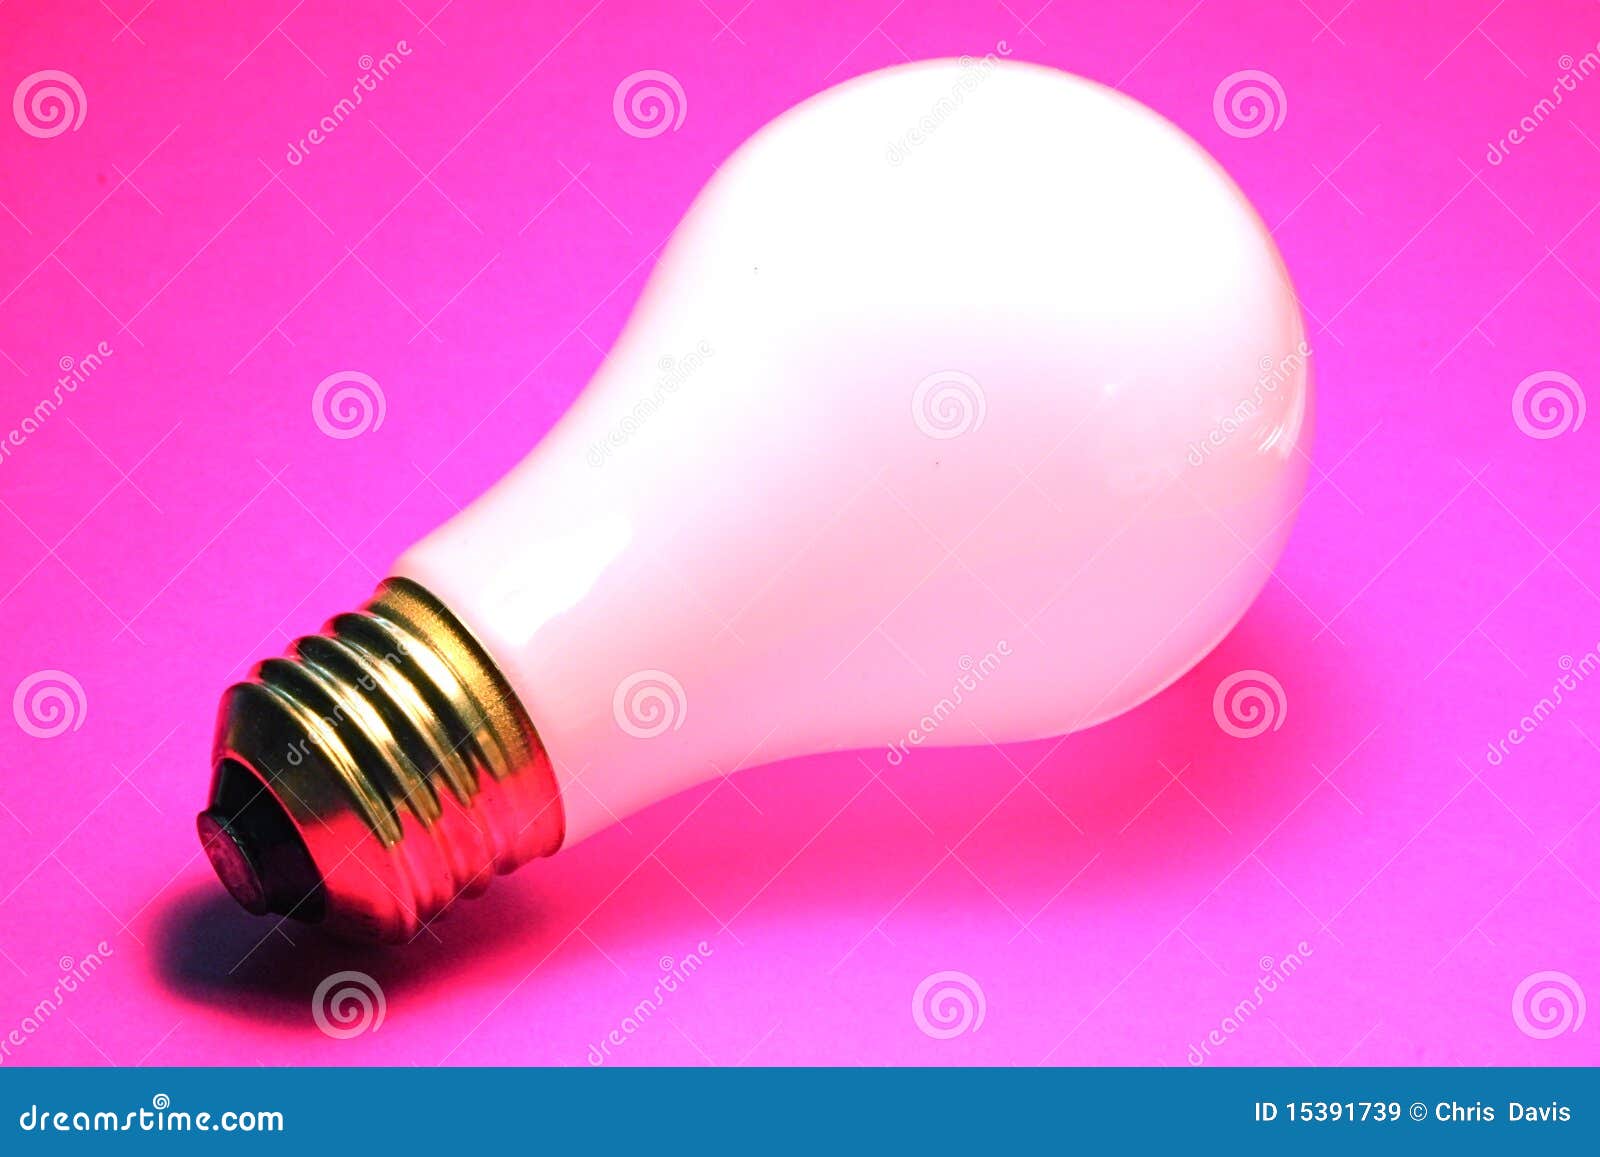 incandescent lightbulb